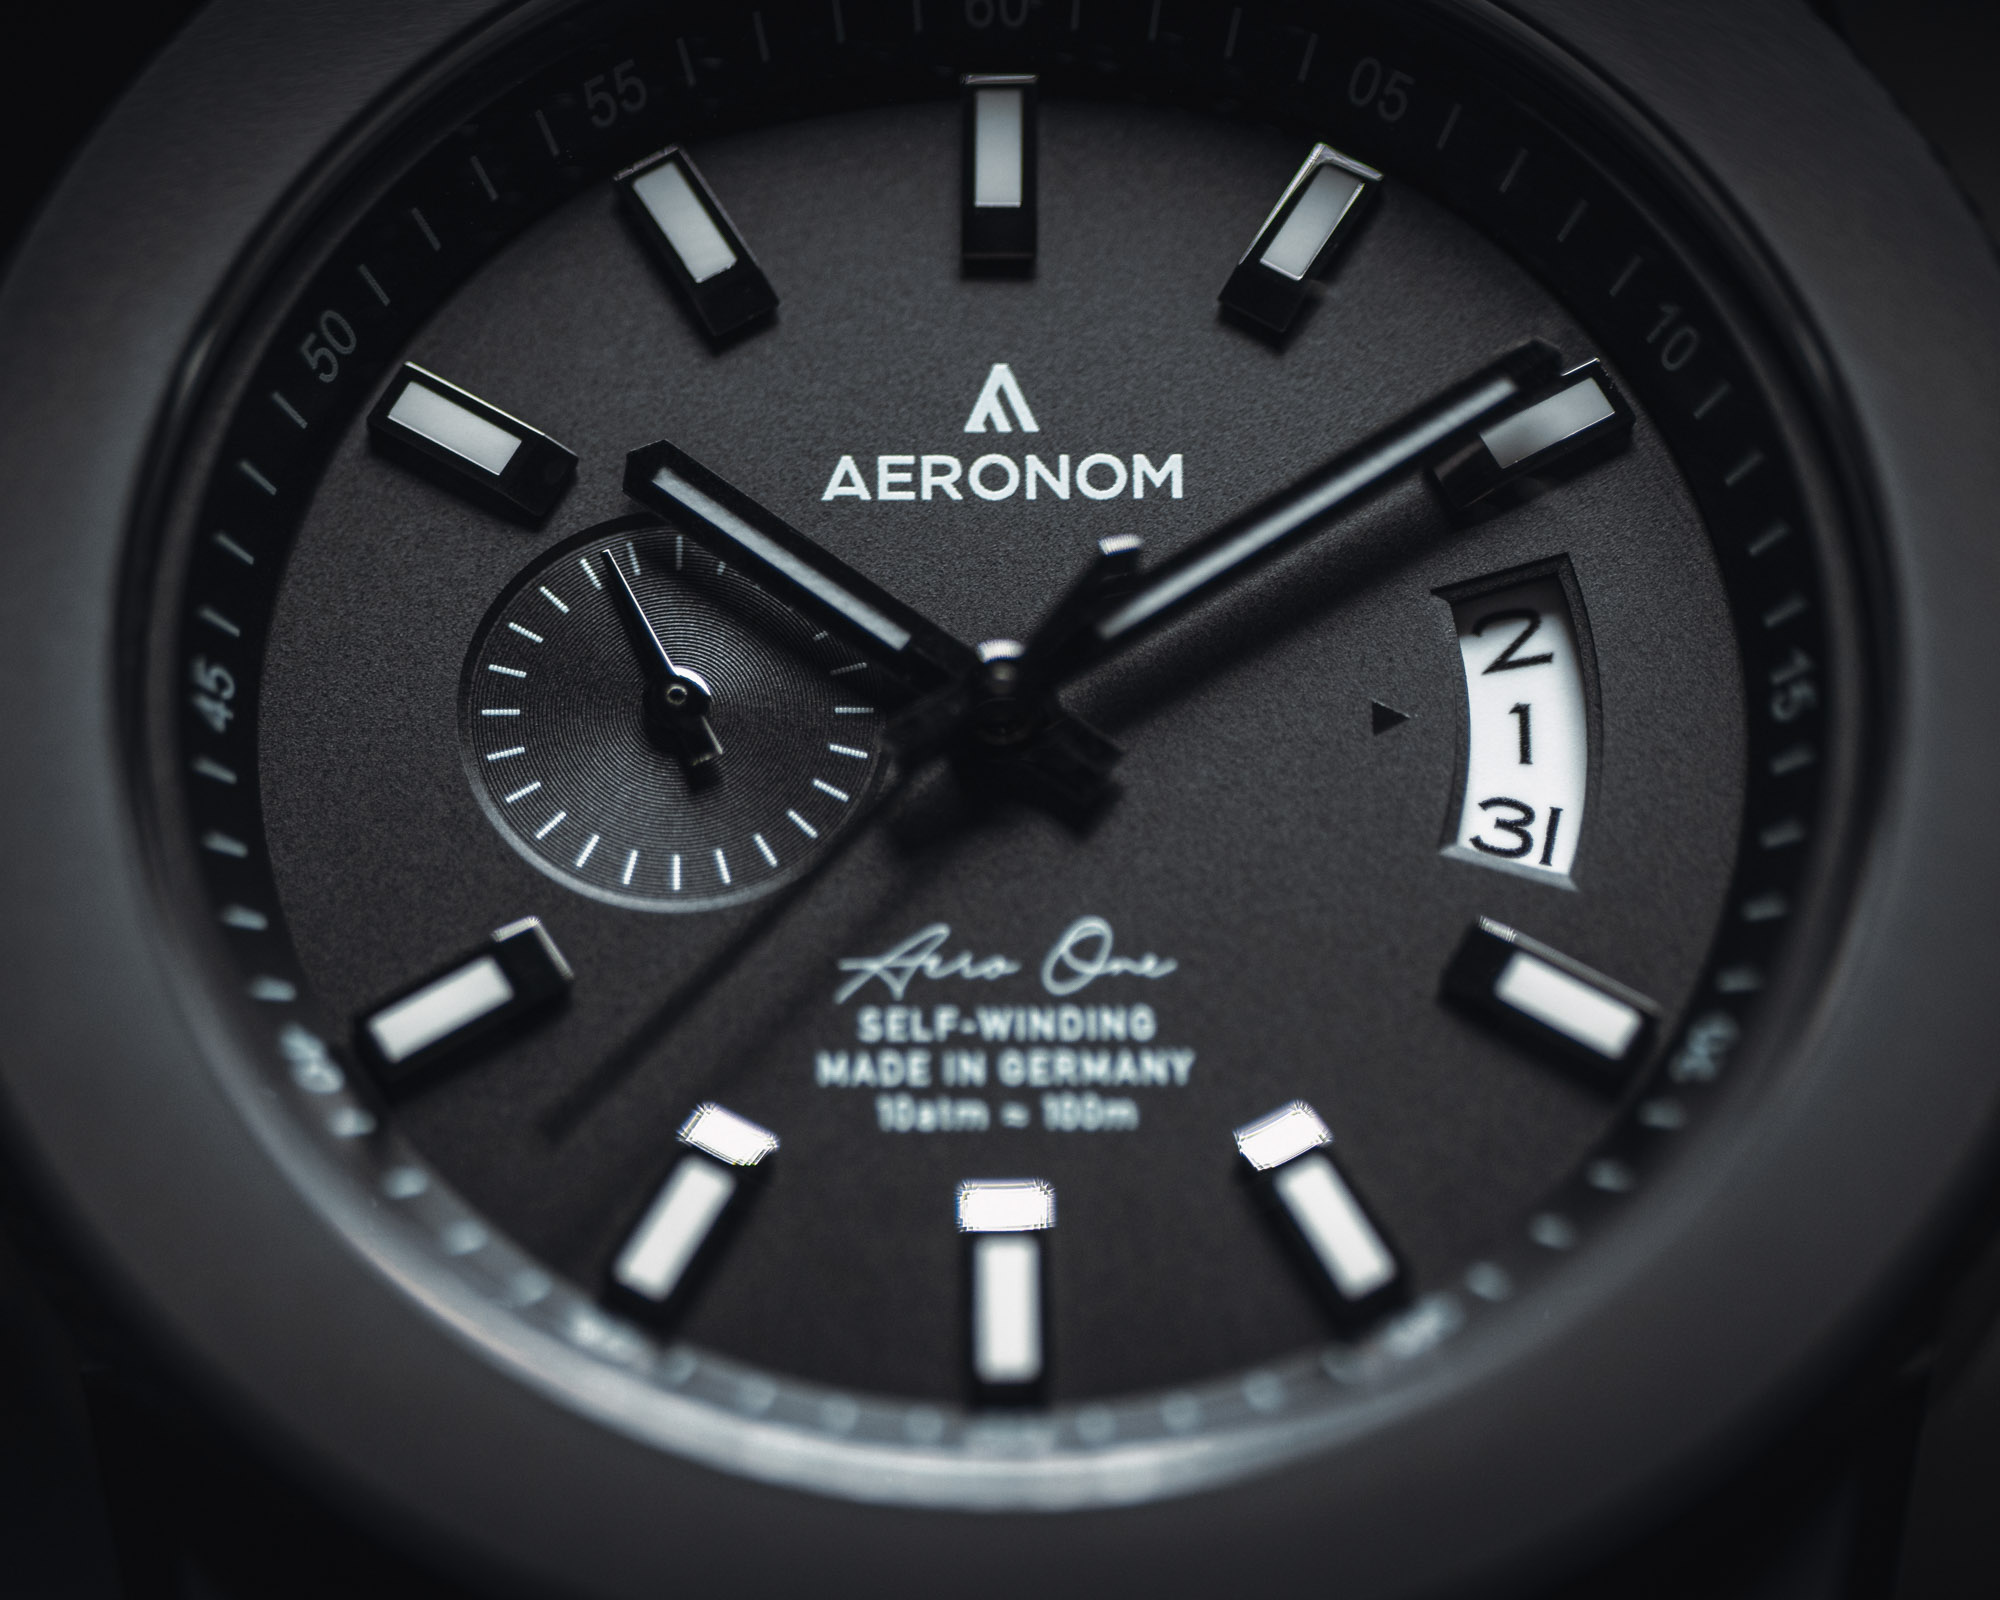 Aeronom переходит к темным тонам, выпуская лимитированную серию часов Aero One BLK